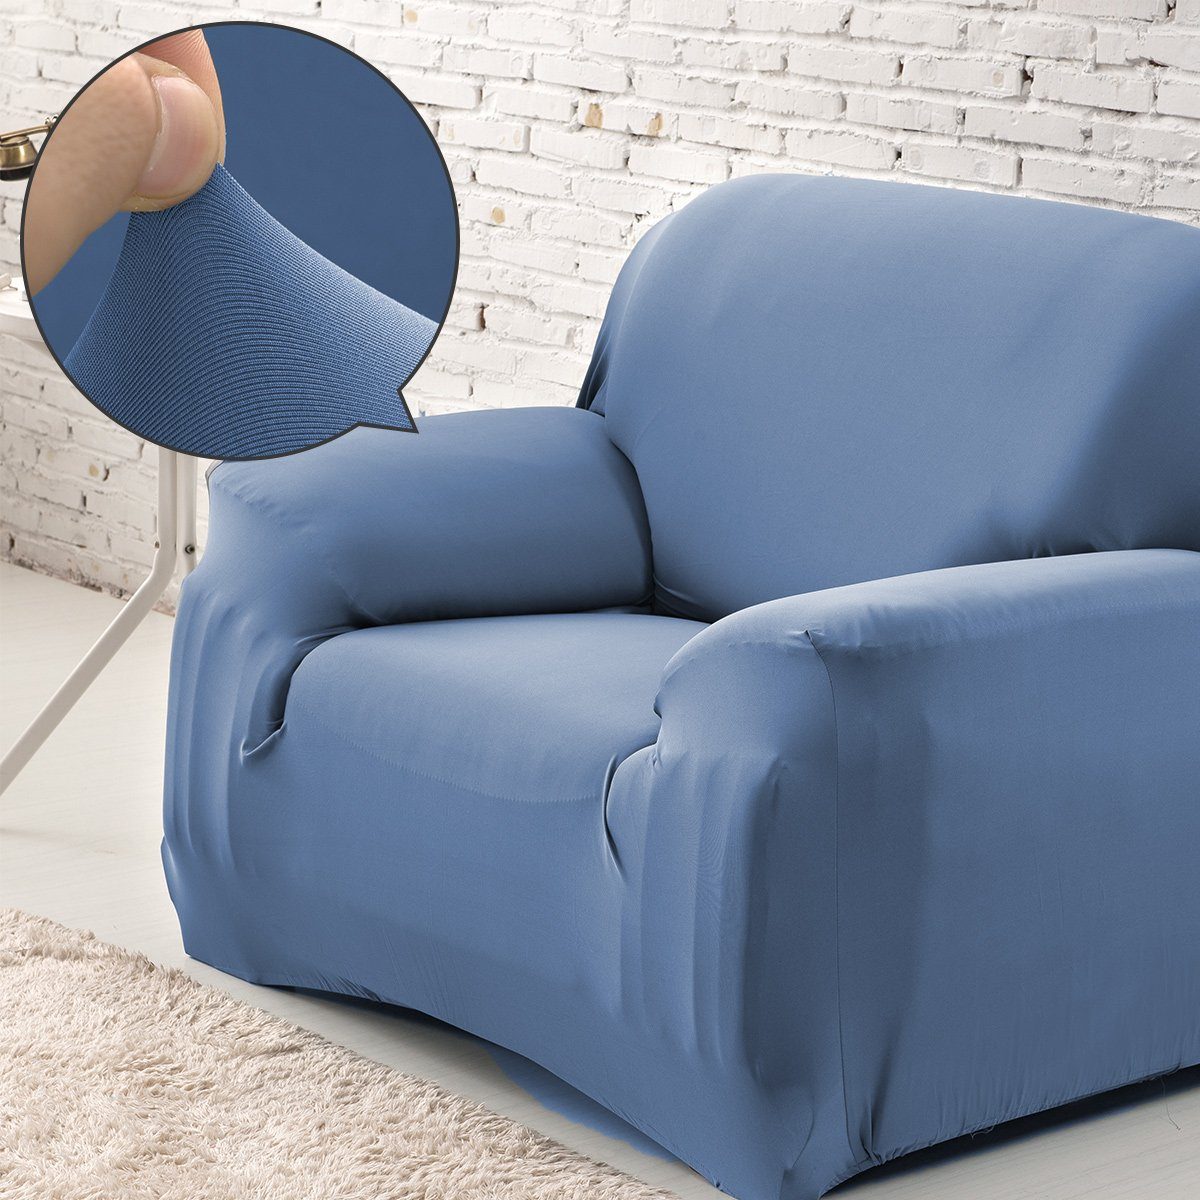 Sofahusse für Sofa Protector Stretch Couchbezug blau Hunde MULISOFT, Wohnzimmer Universal, Sofabezug für Haustiere Überwürfe Waschbar